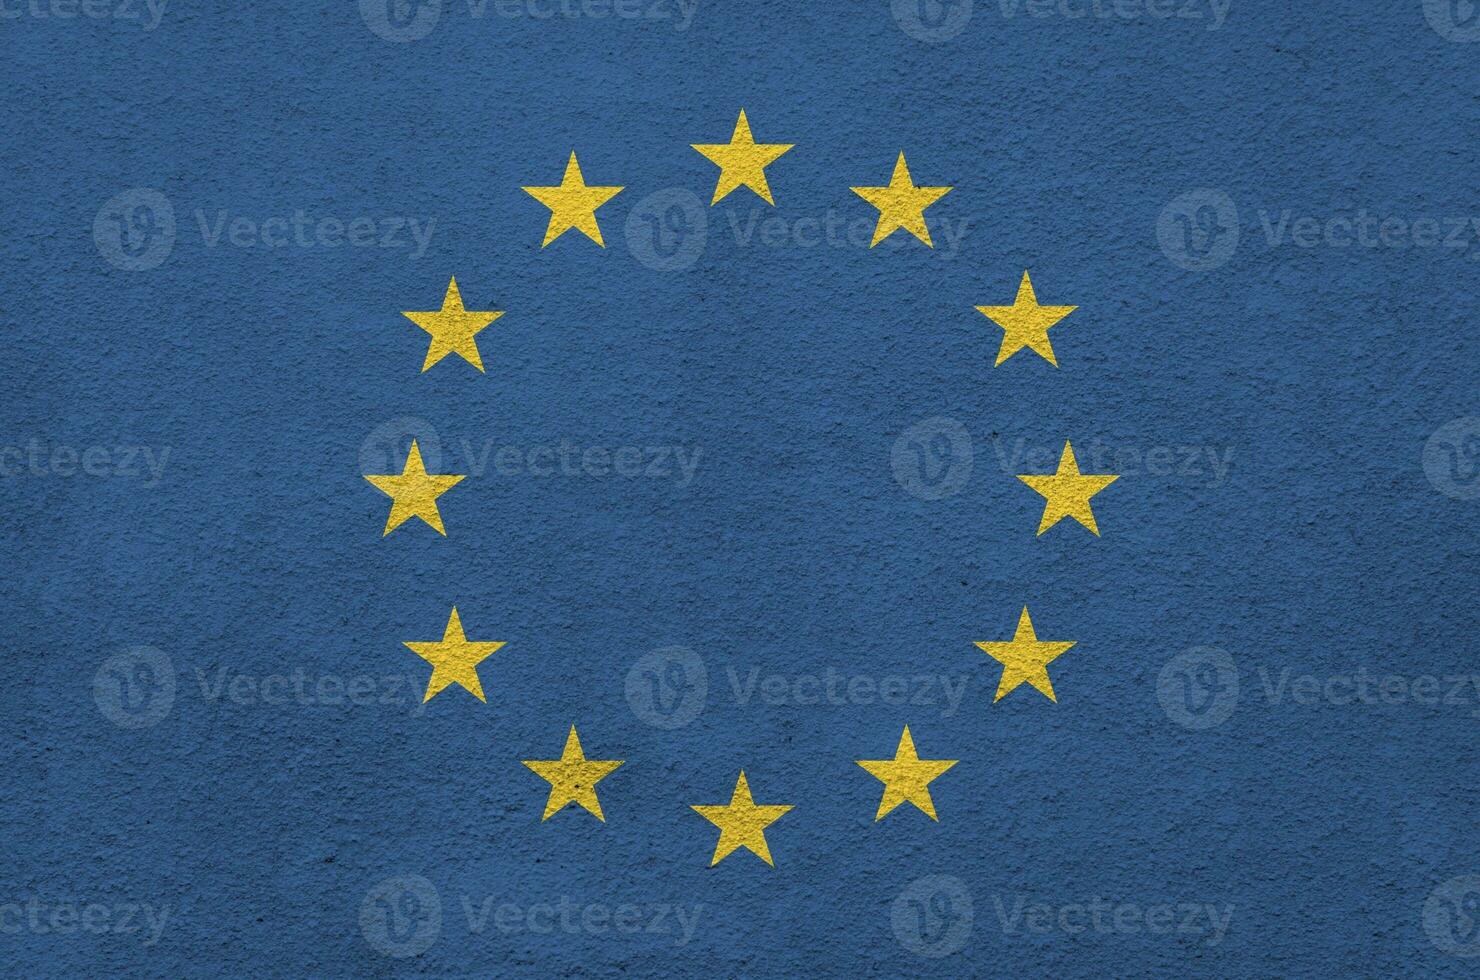 europeisk union flagga avbildad i ljus måla färger på gammal lättnad putsning vägg. texturerad baner på grov bakgrund foto